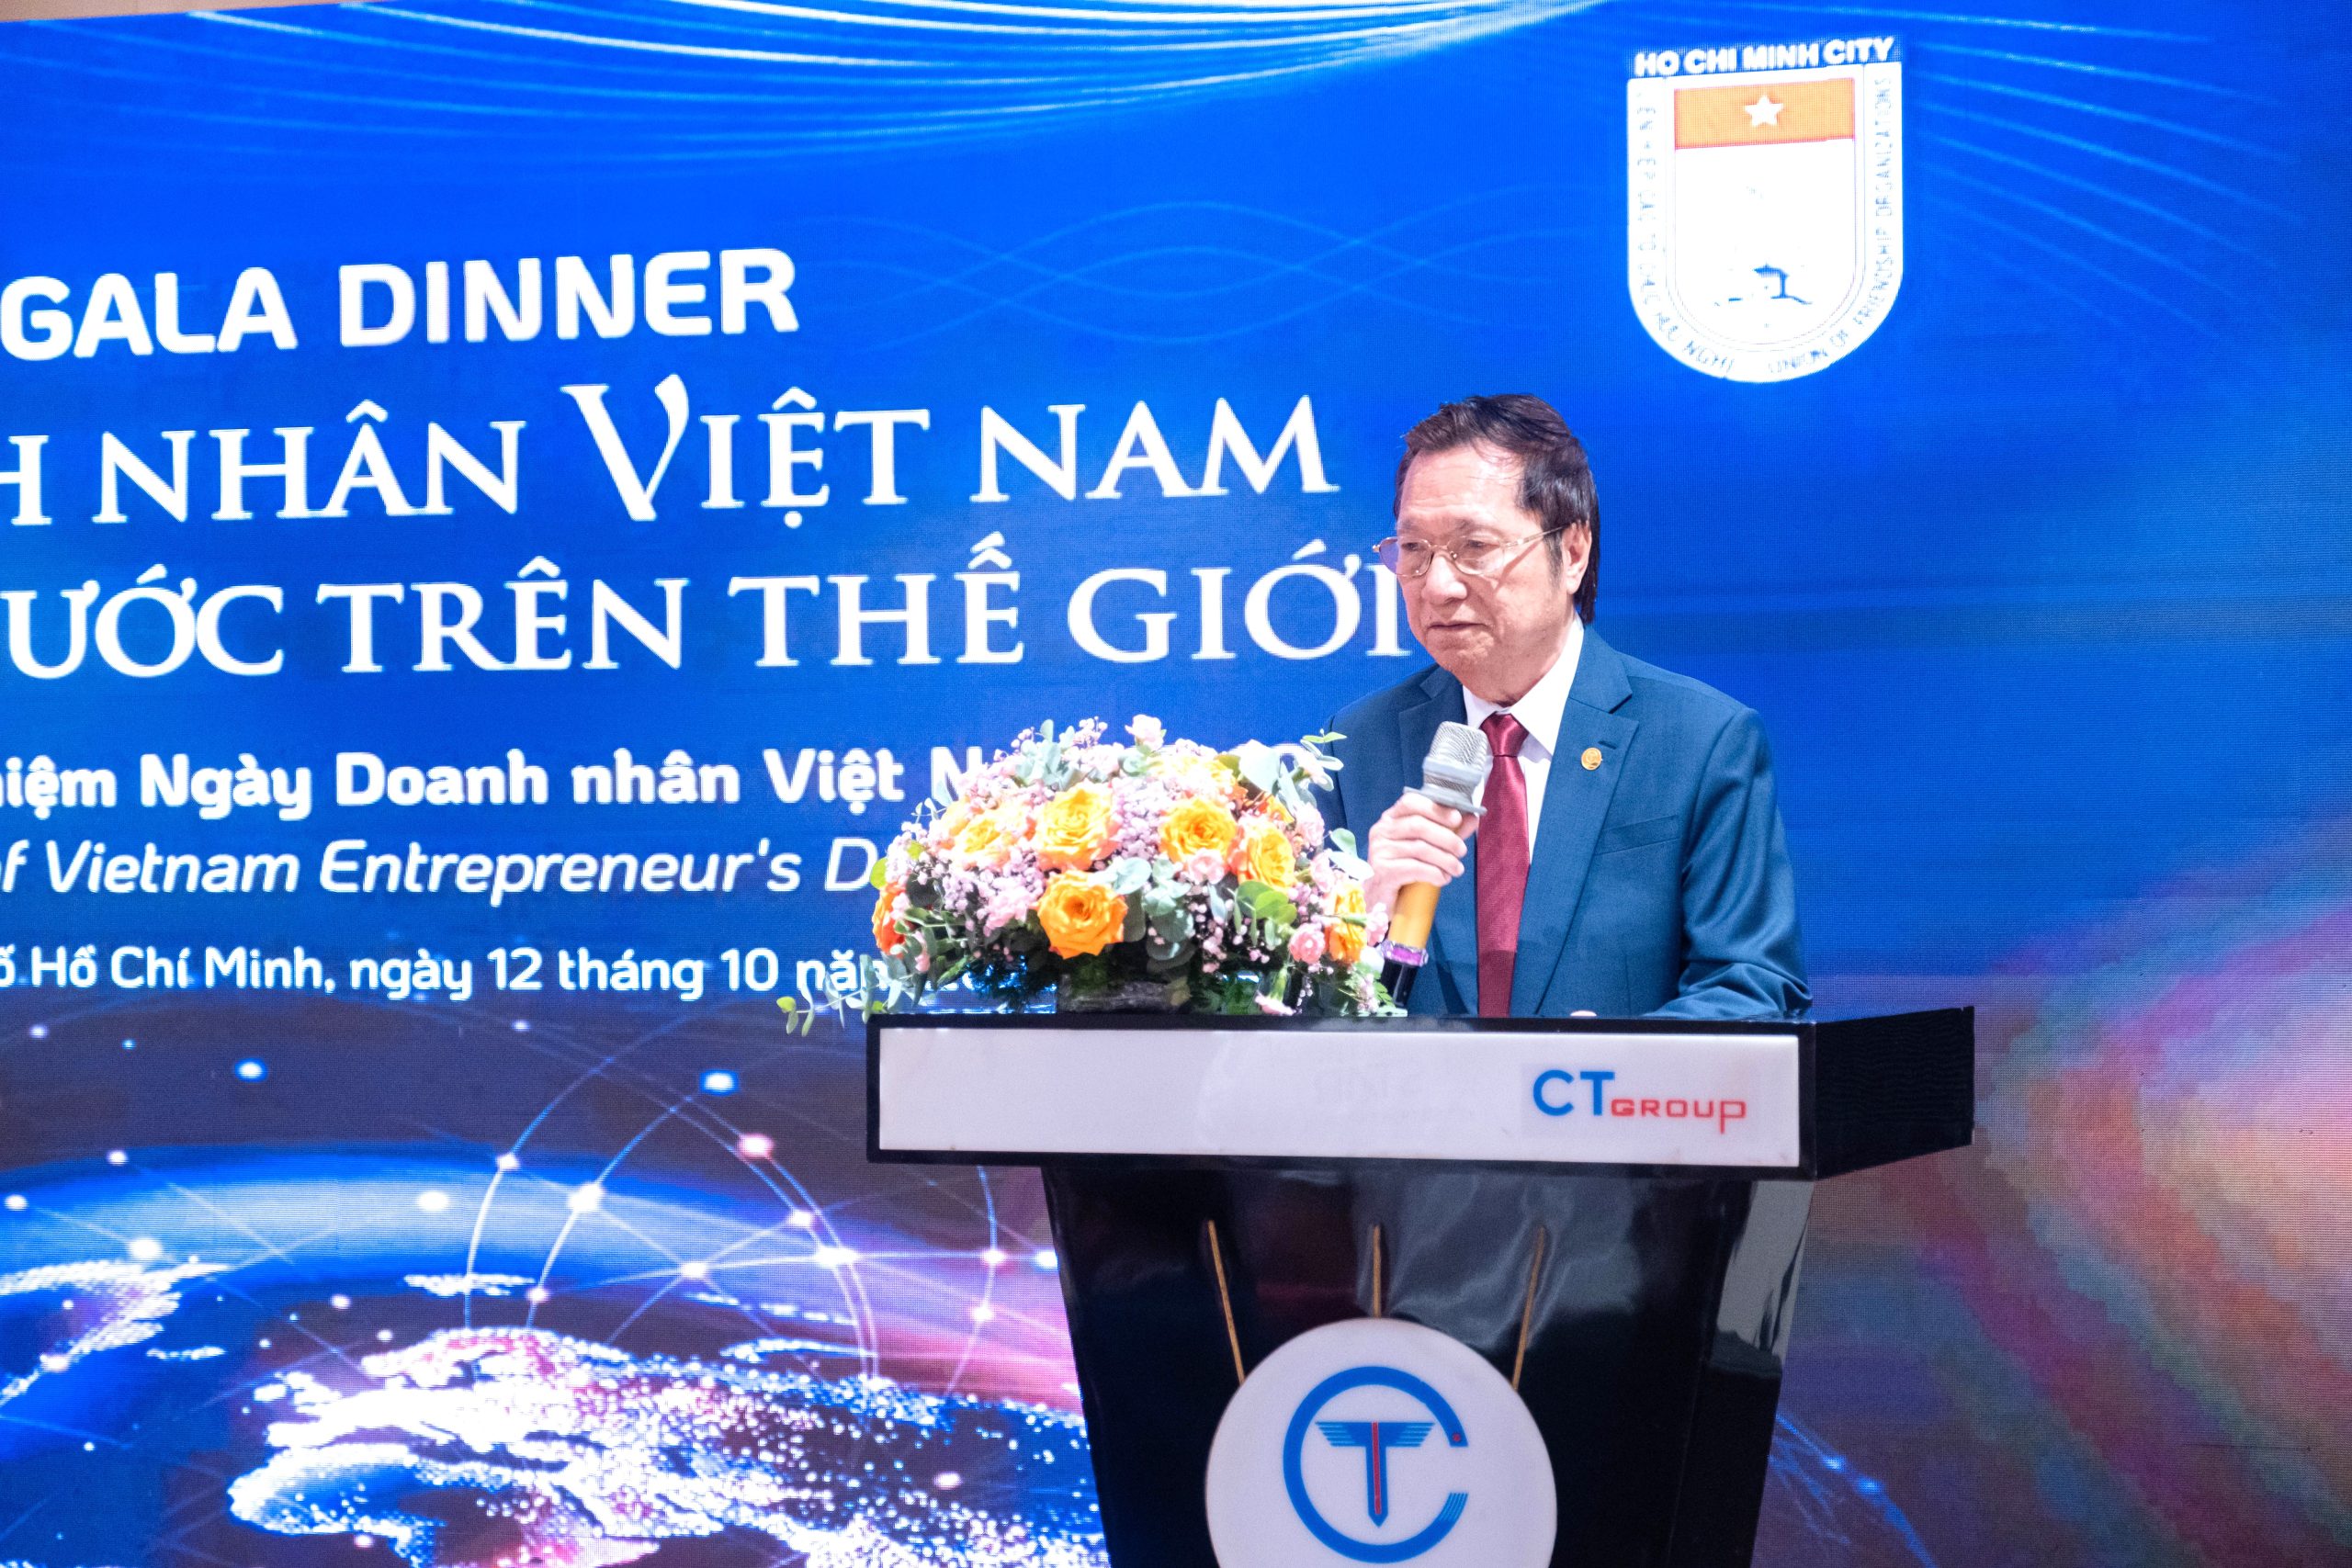 Ông Vũ Hồng Quang mong muốn sự kiện trở thành cầu nối hợp tác giữa doanh nhân Việt Nam và quốc tế